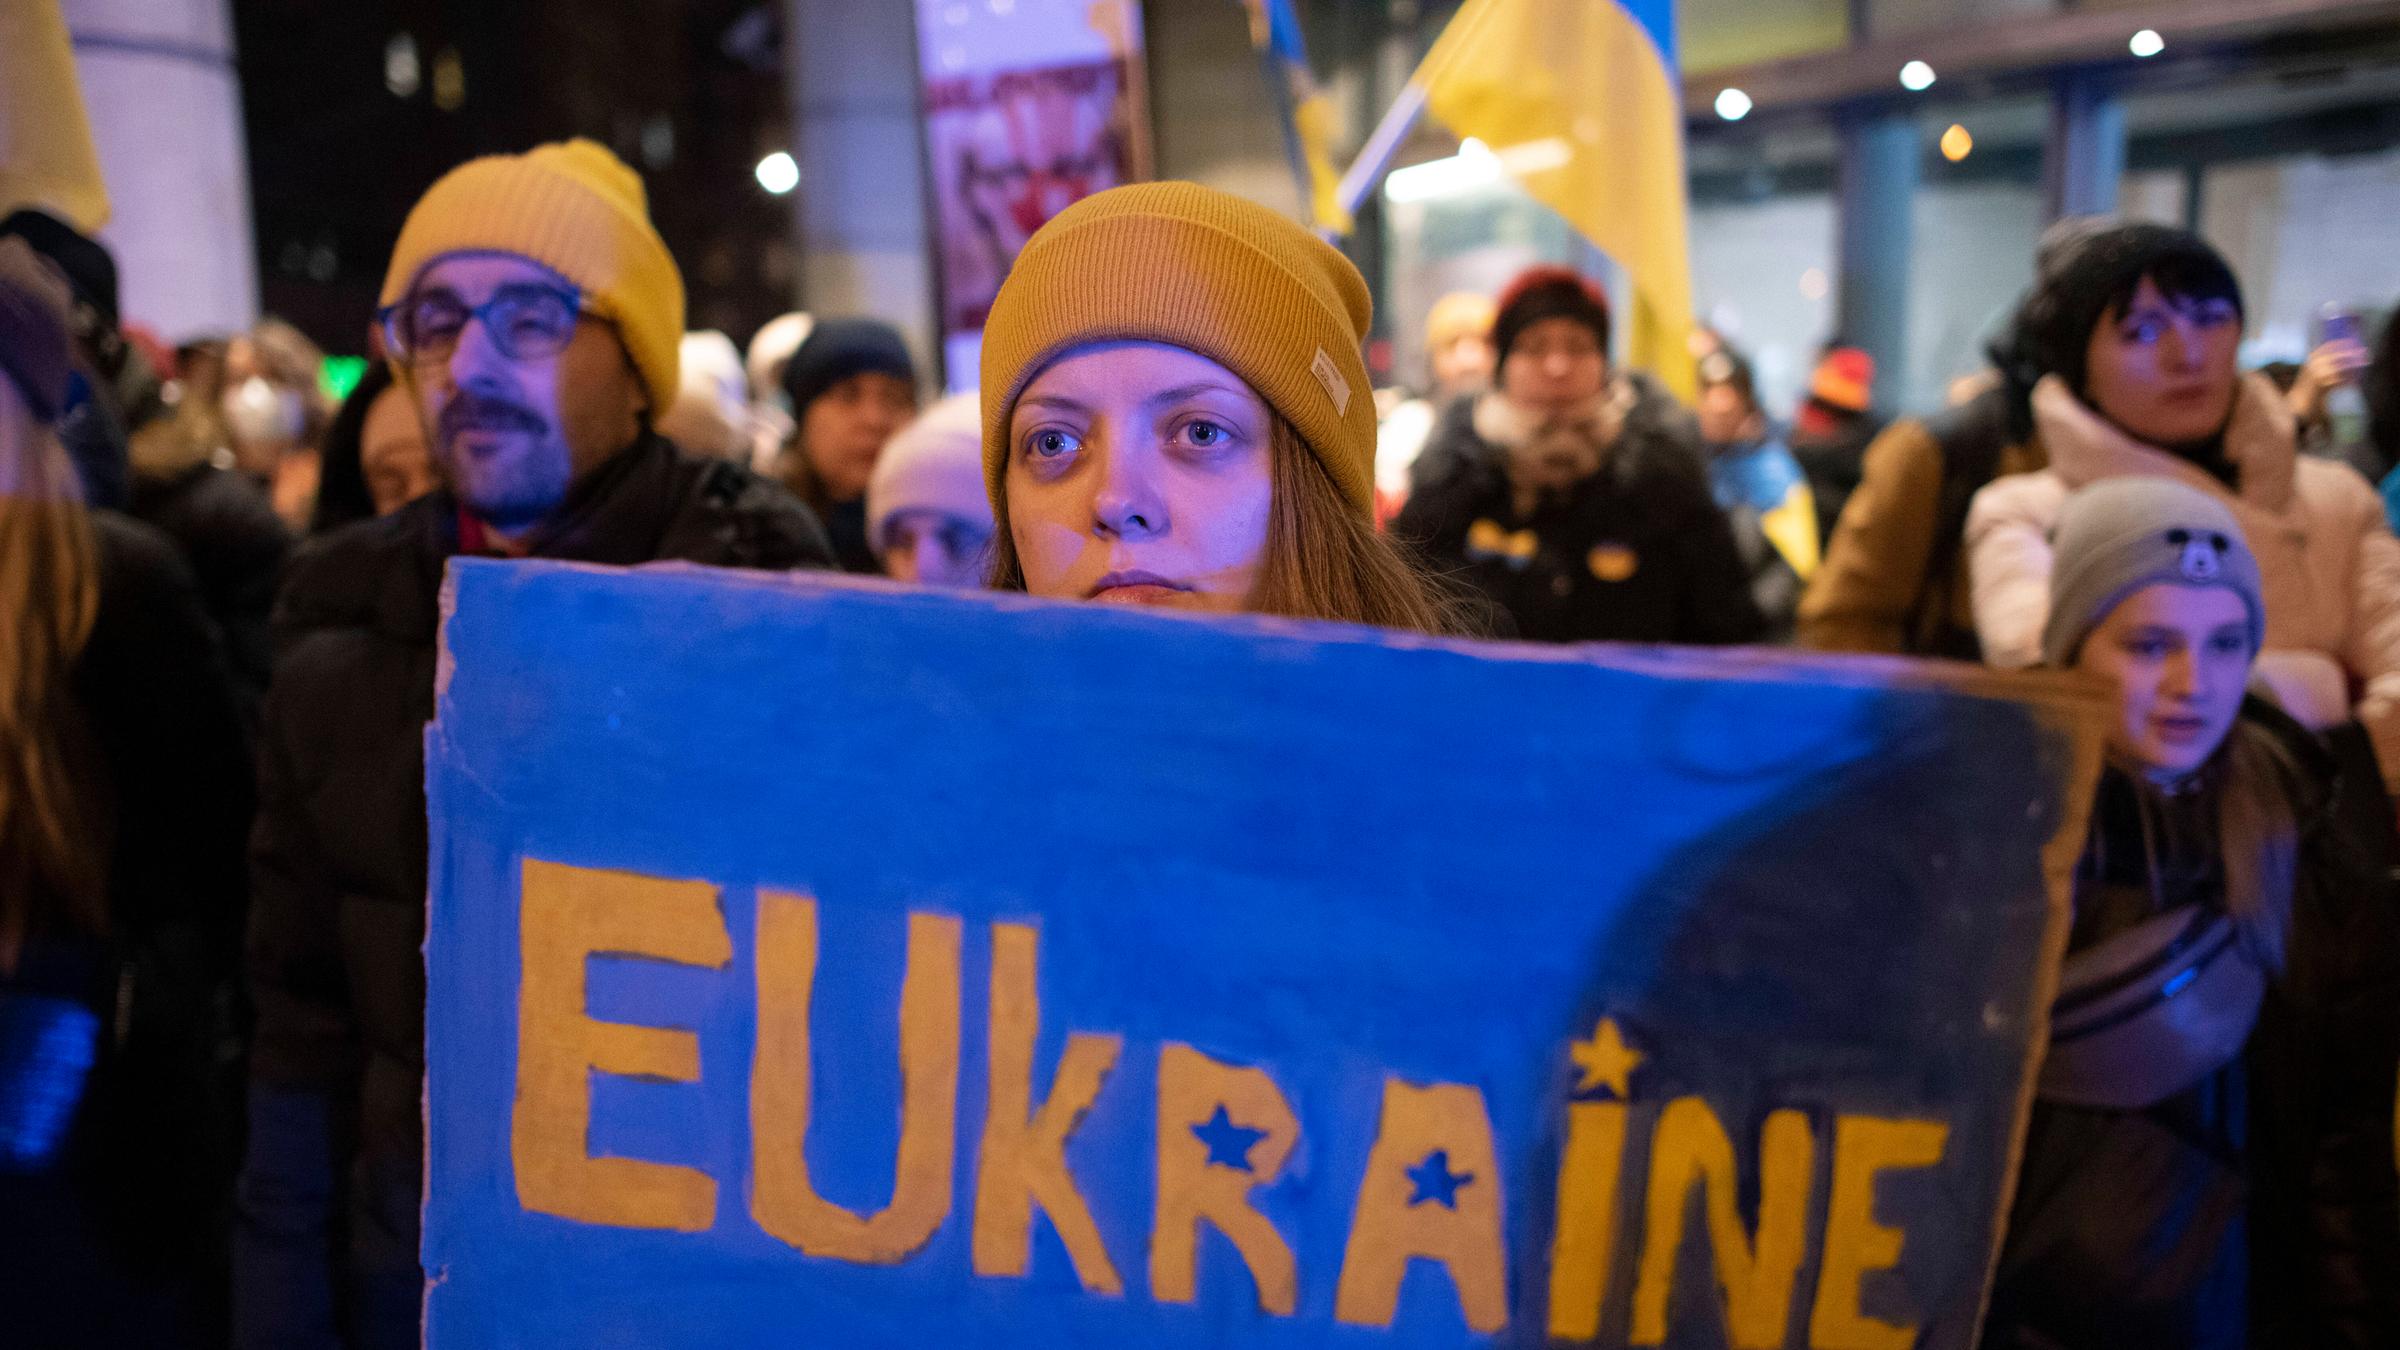 Eine Demonstrantin in Warschau hält ein Transparent mit der Aufschrift "EUkraine"